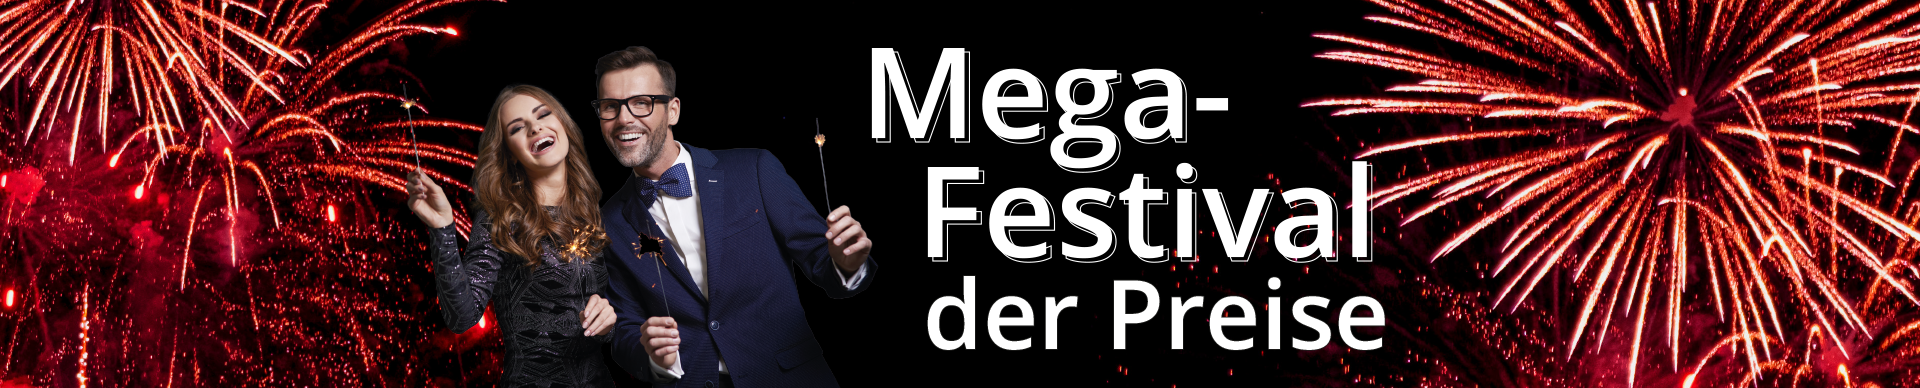 Mega-Festival der Preise bei Möbel Hartwig